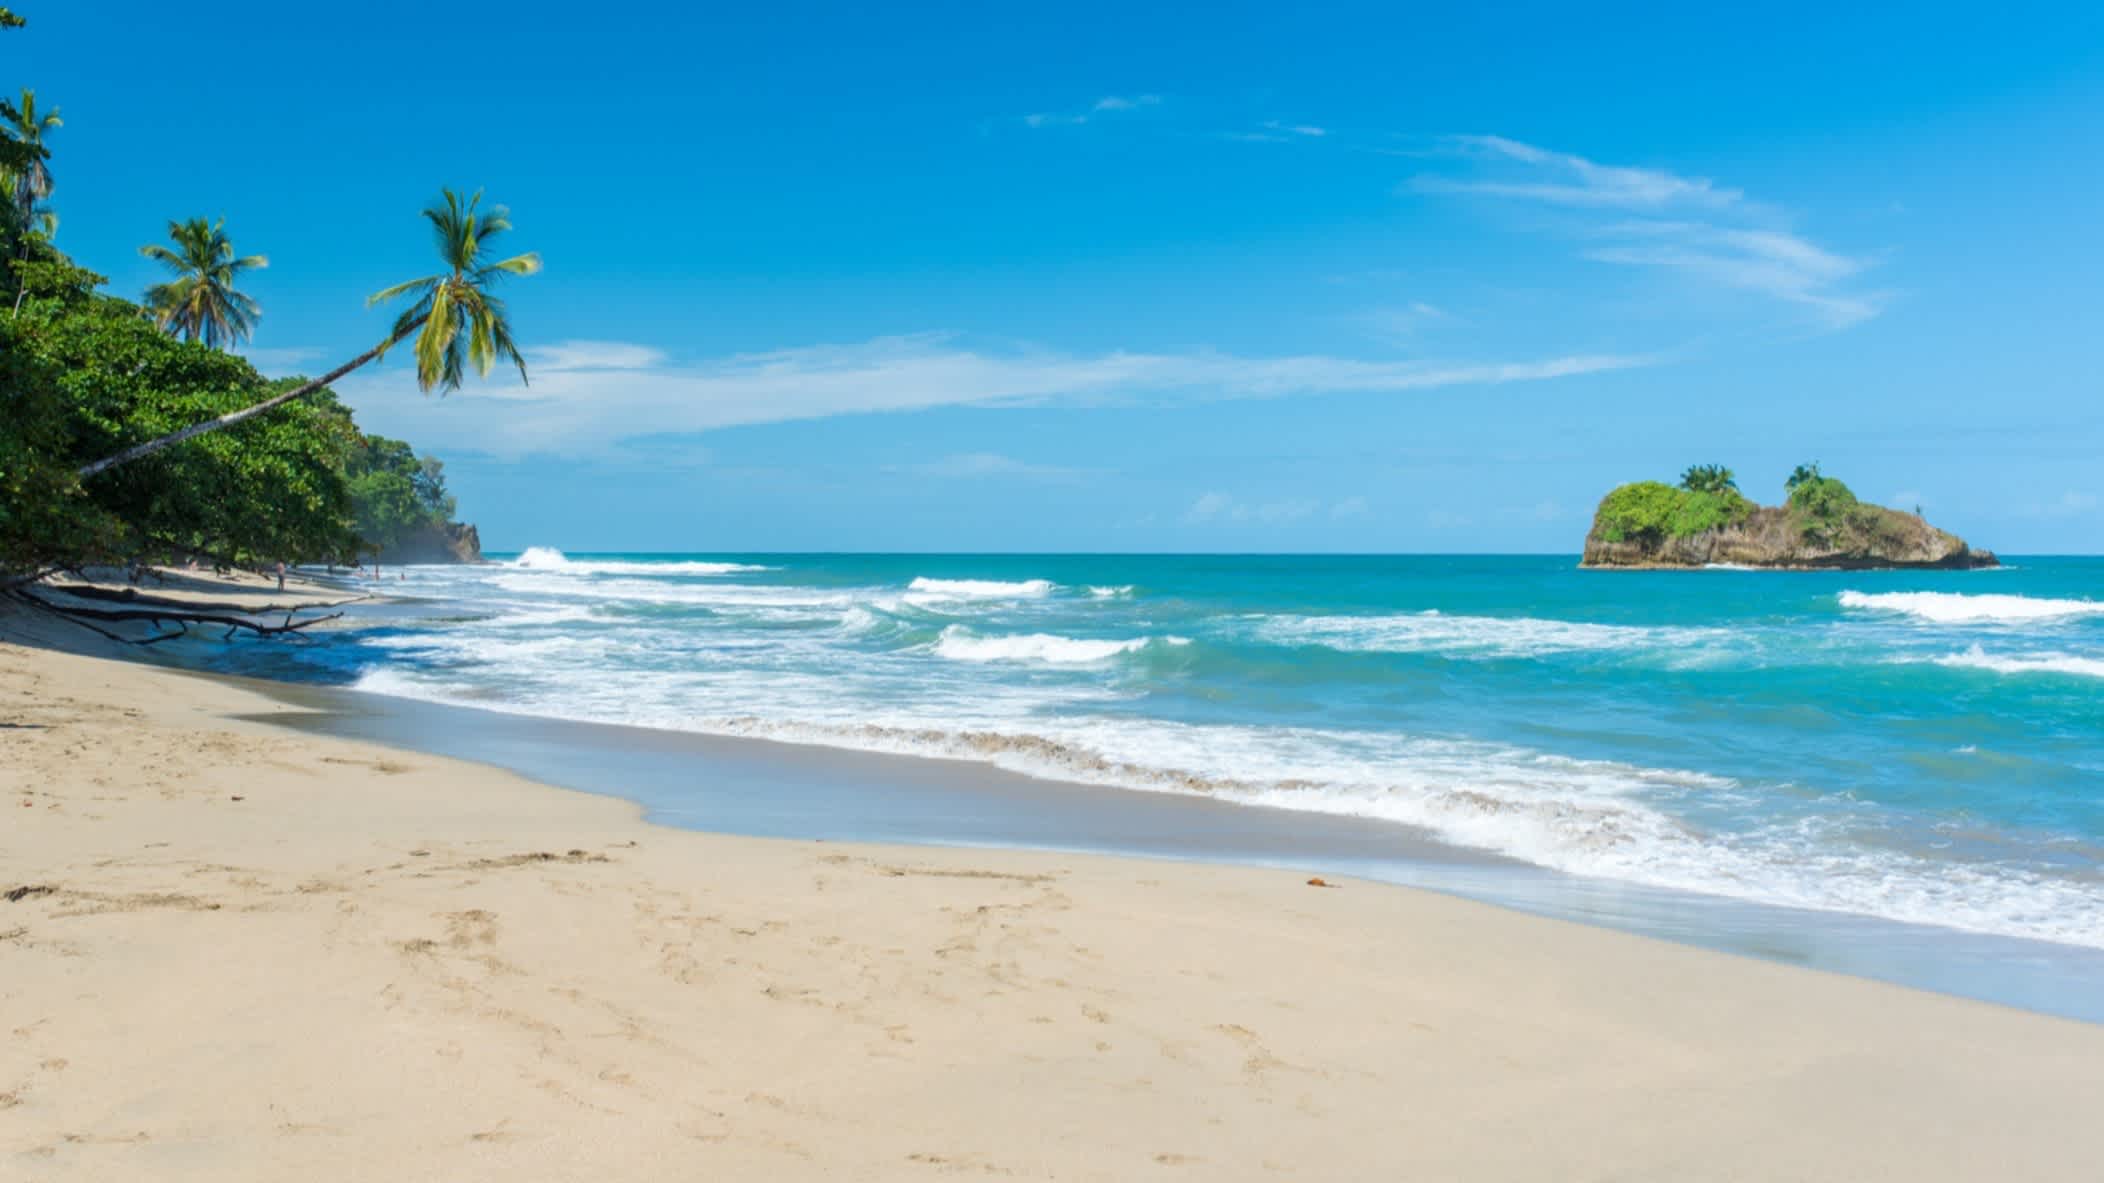 La plage tropicale de Cocles près de Puerto Viejo, Costa Rica.

